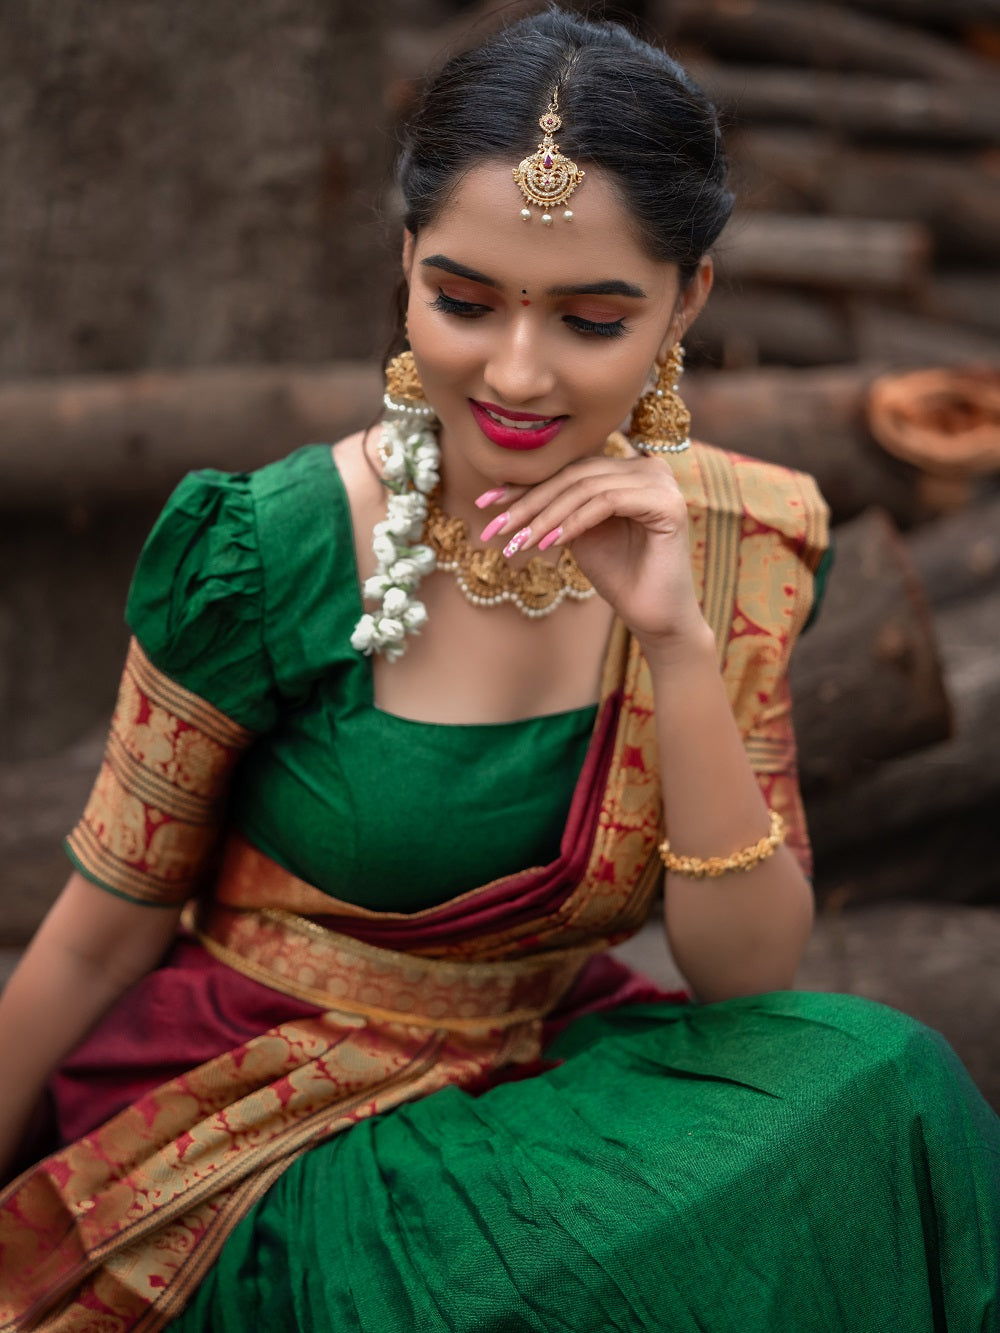 इन Chunri Print Sarees को पहन कर मिलेगा एथनिक लुक फेस्टिव से लेकर फंक्शन के  लिए हैं बेस्ट विकल्प - Chunri Print Sarees For Women Clubbing Ethnicity  With Style And Swag